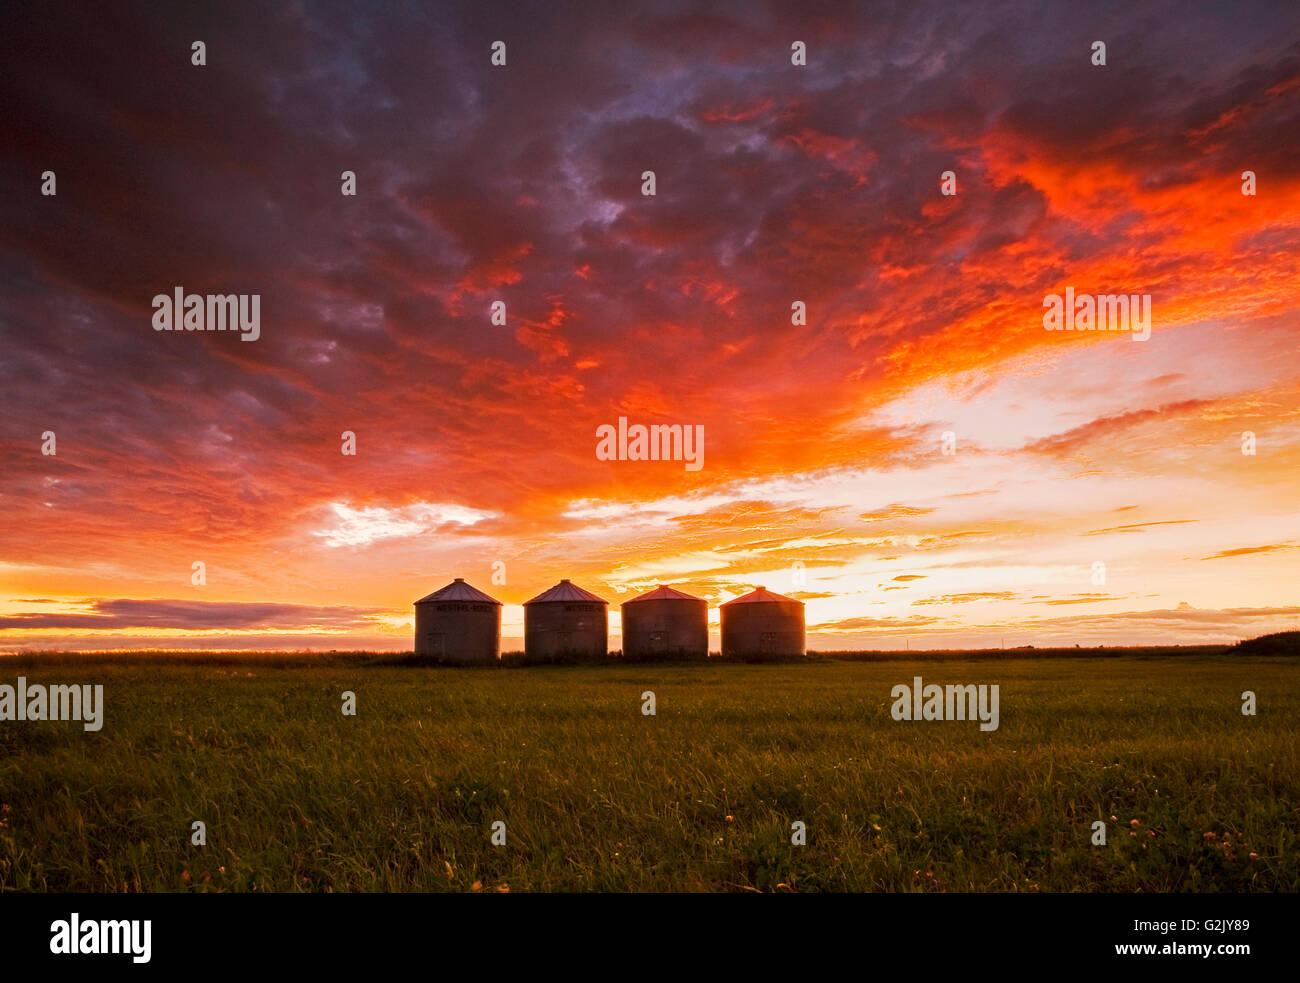 Les cellules de stockage de céréales au coucher du soleil, près de Carey, Manitoba, Canada Banque D'Images